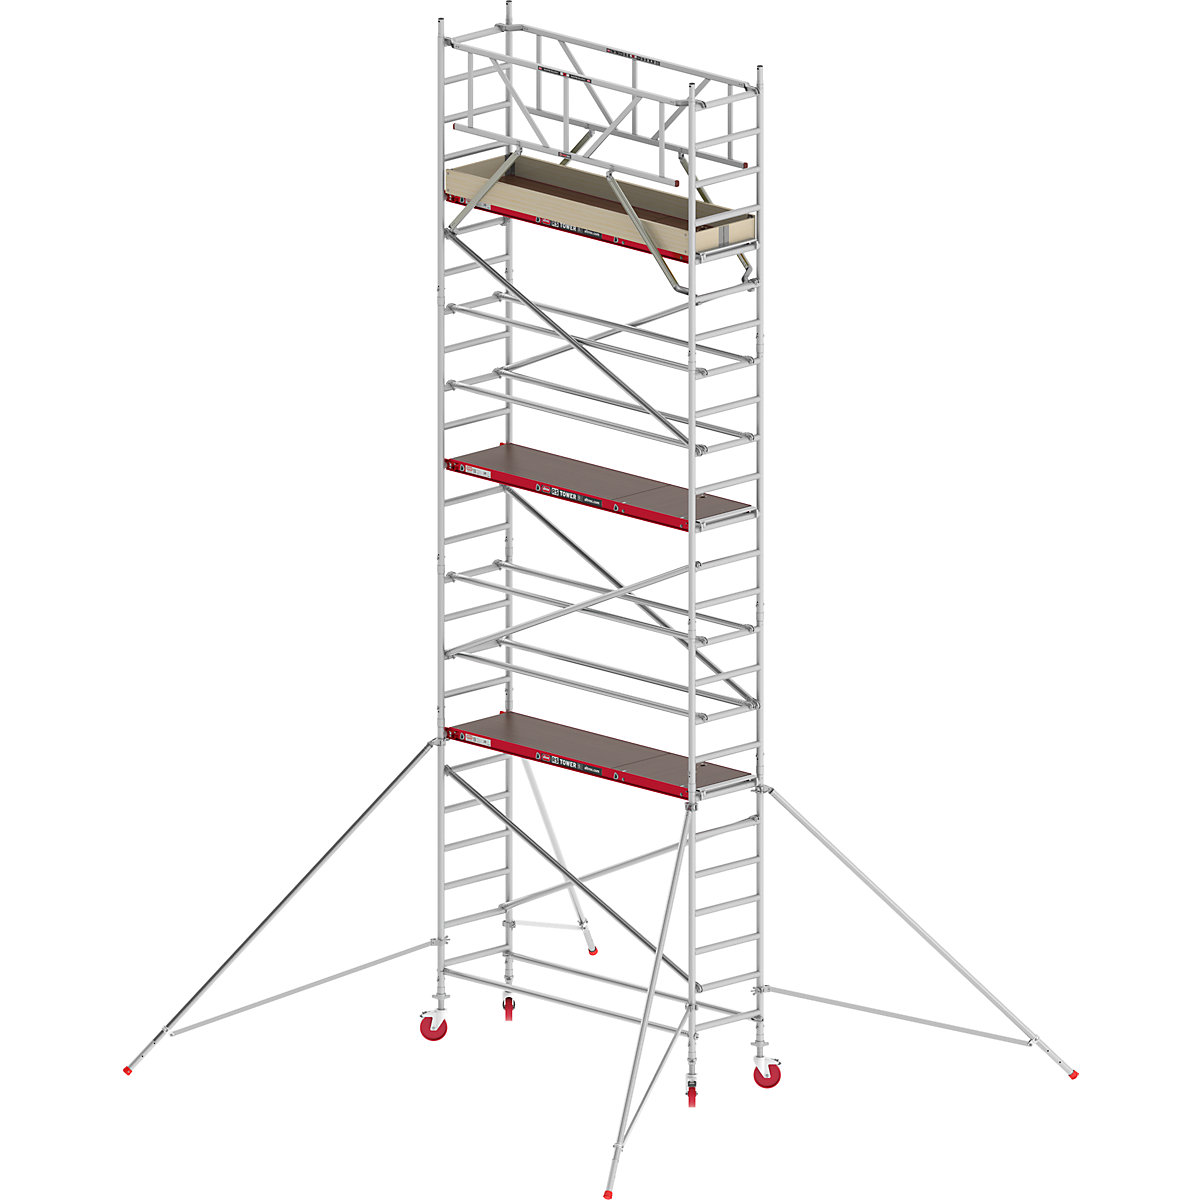 Uska pomična skela RS TOWER 41 – Altrex, drvena platforma, dužina 1,85 m, radna visina 8,20 m-1